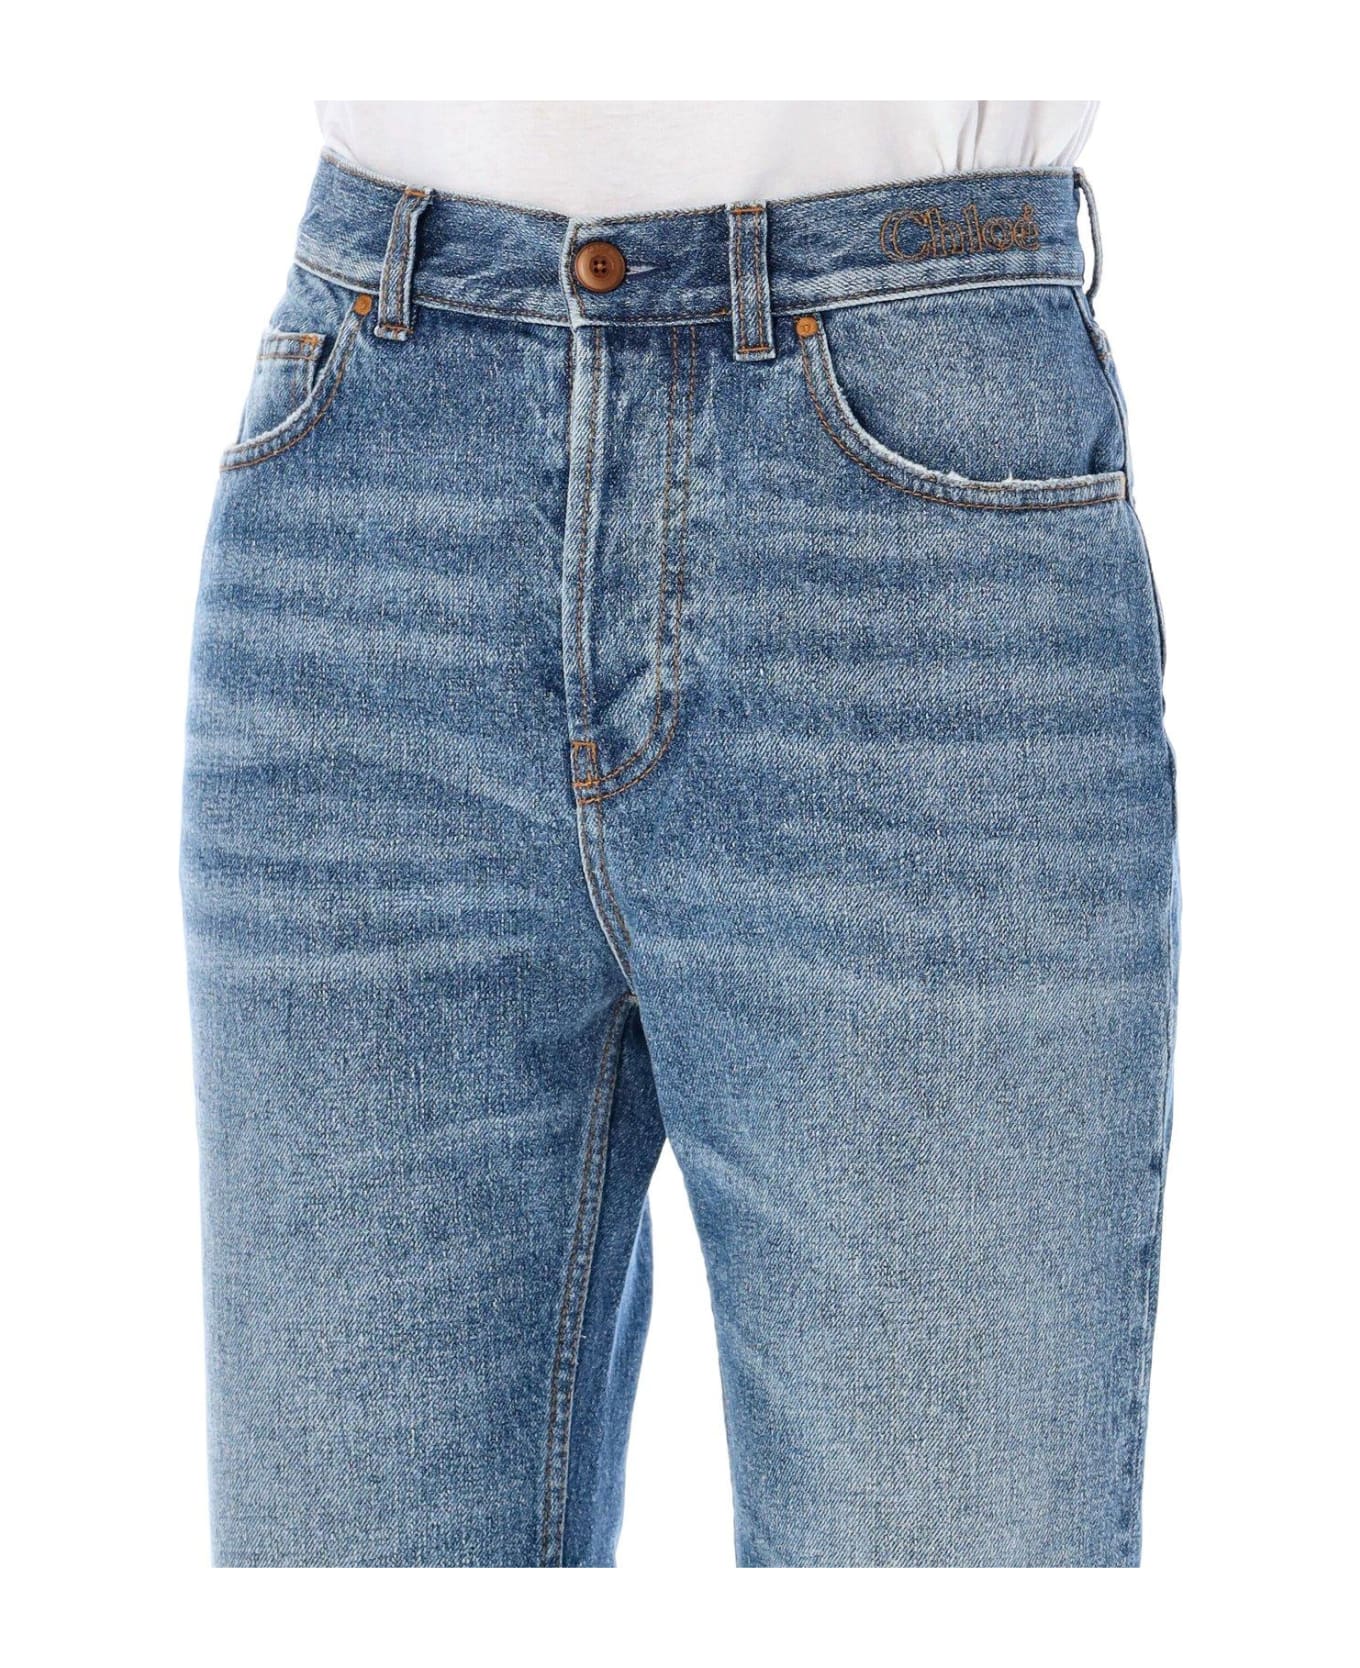 Chloé Raw Cut Denim Jeans - FOGGY BLUE デニム